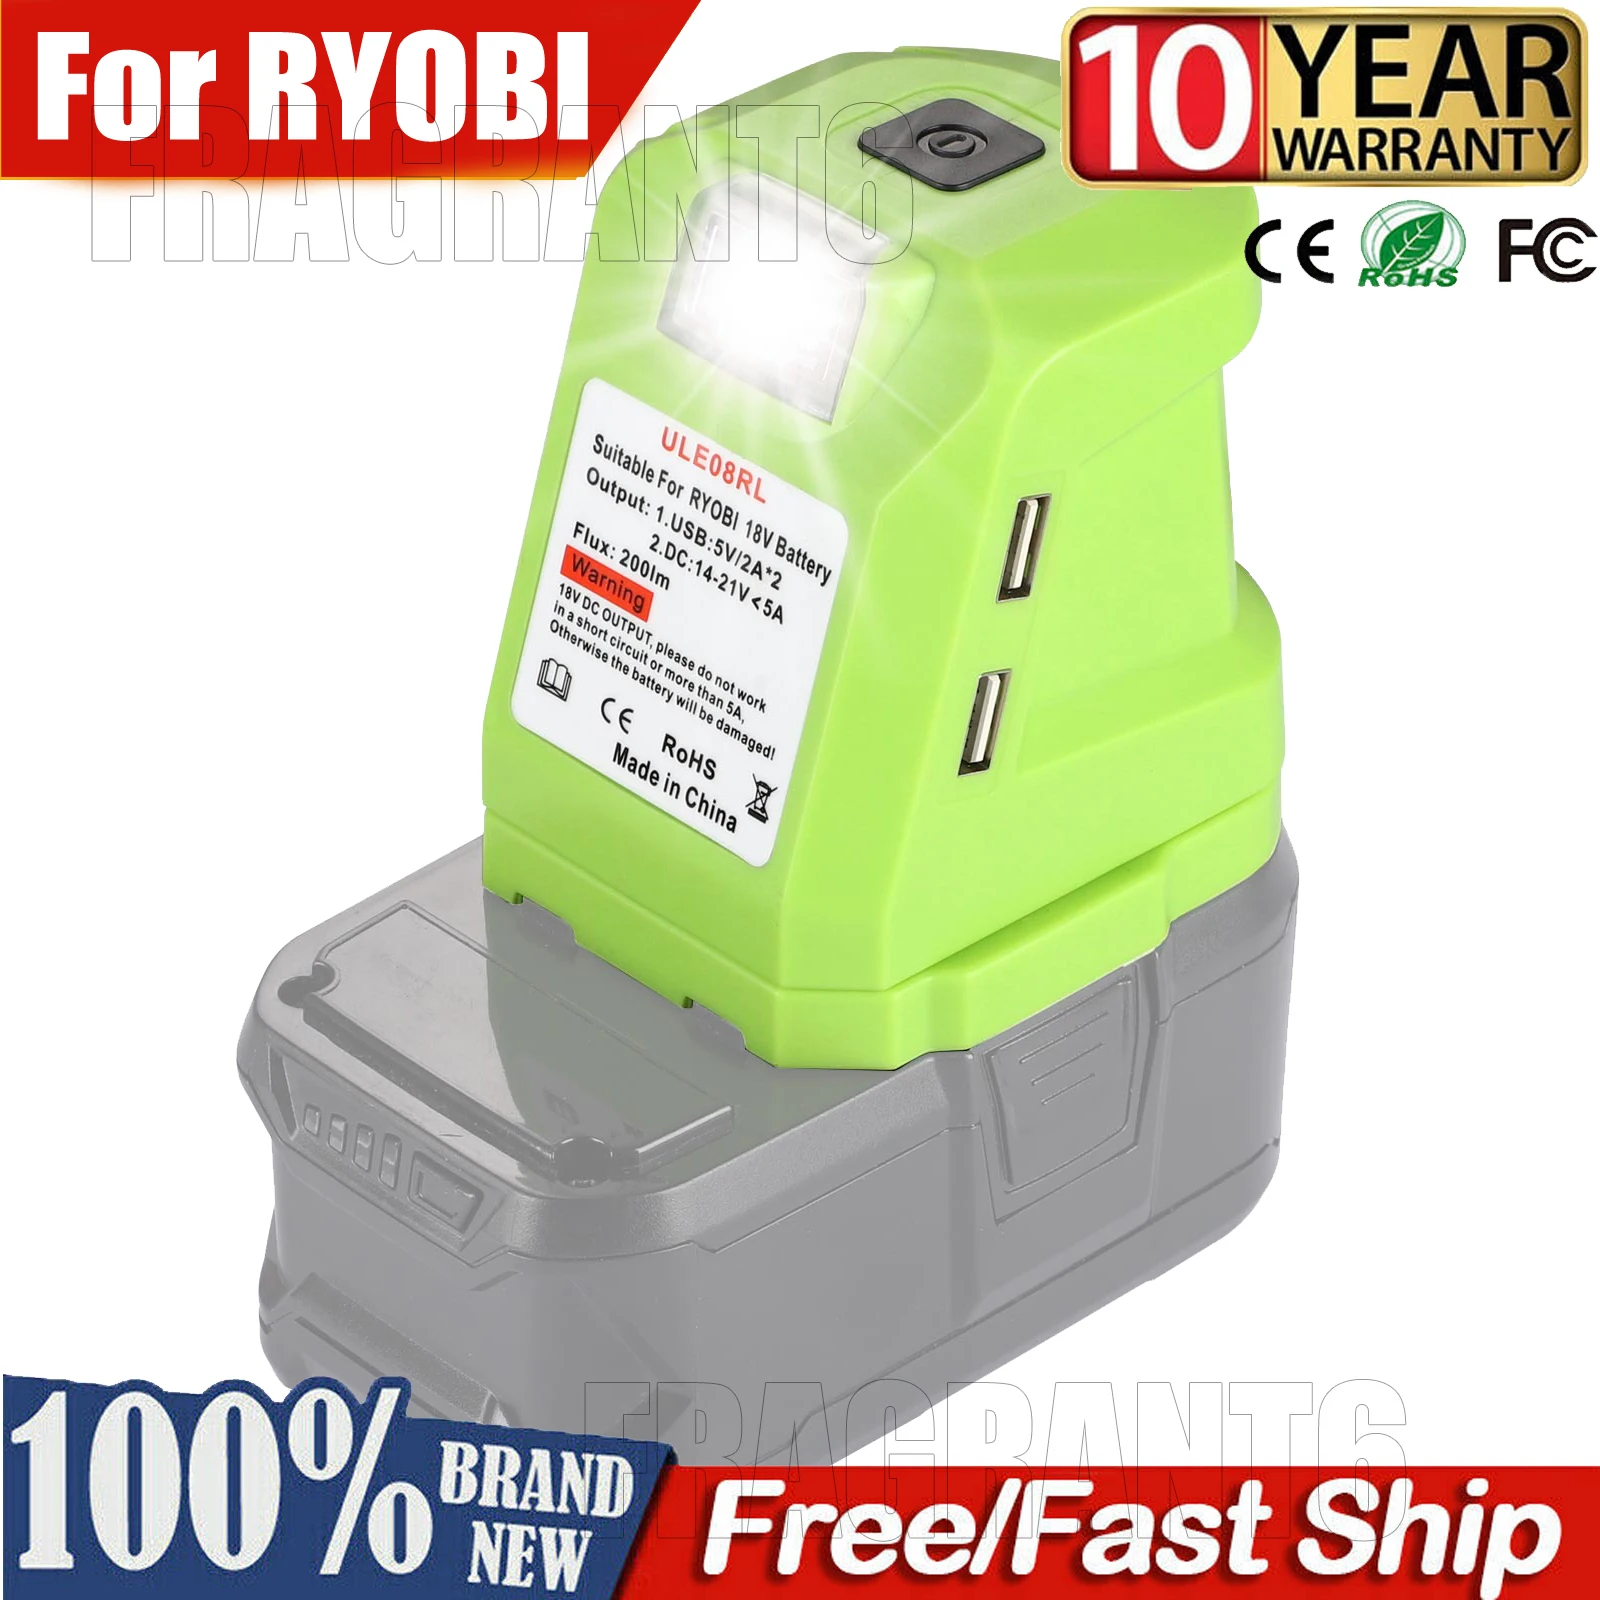 For RYOBI 14.4V/18V Lion Battery Dual USB converter Port with LED Light Spotlight Outdoor Flashlight for RYOBI Batteries enlarge